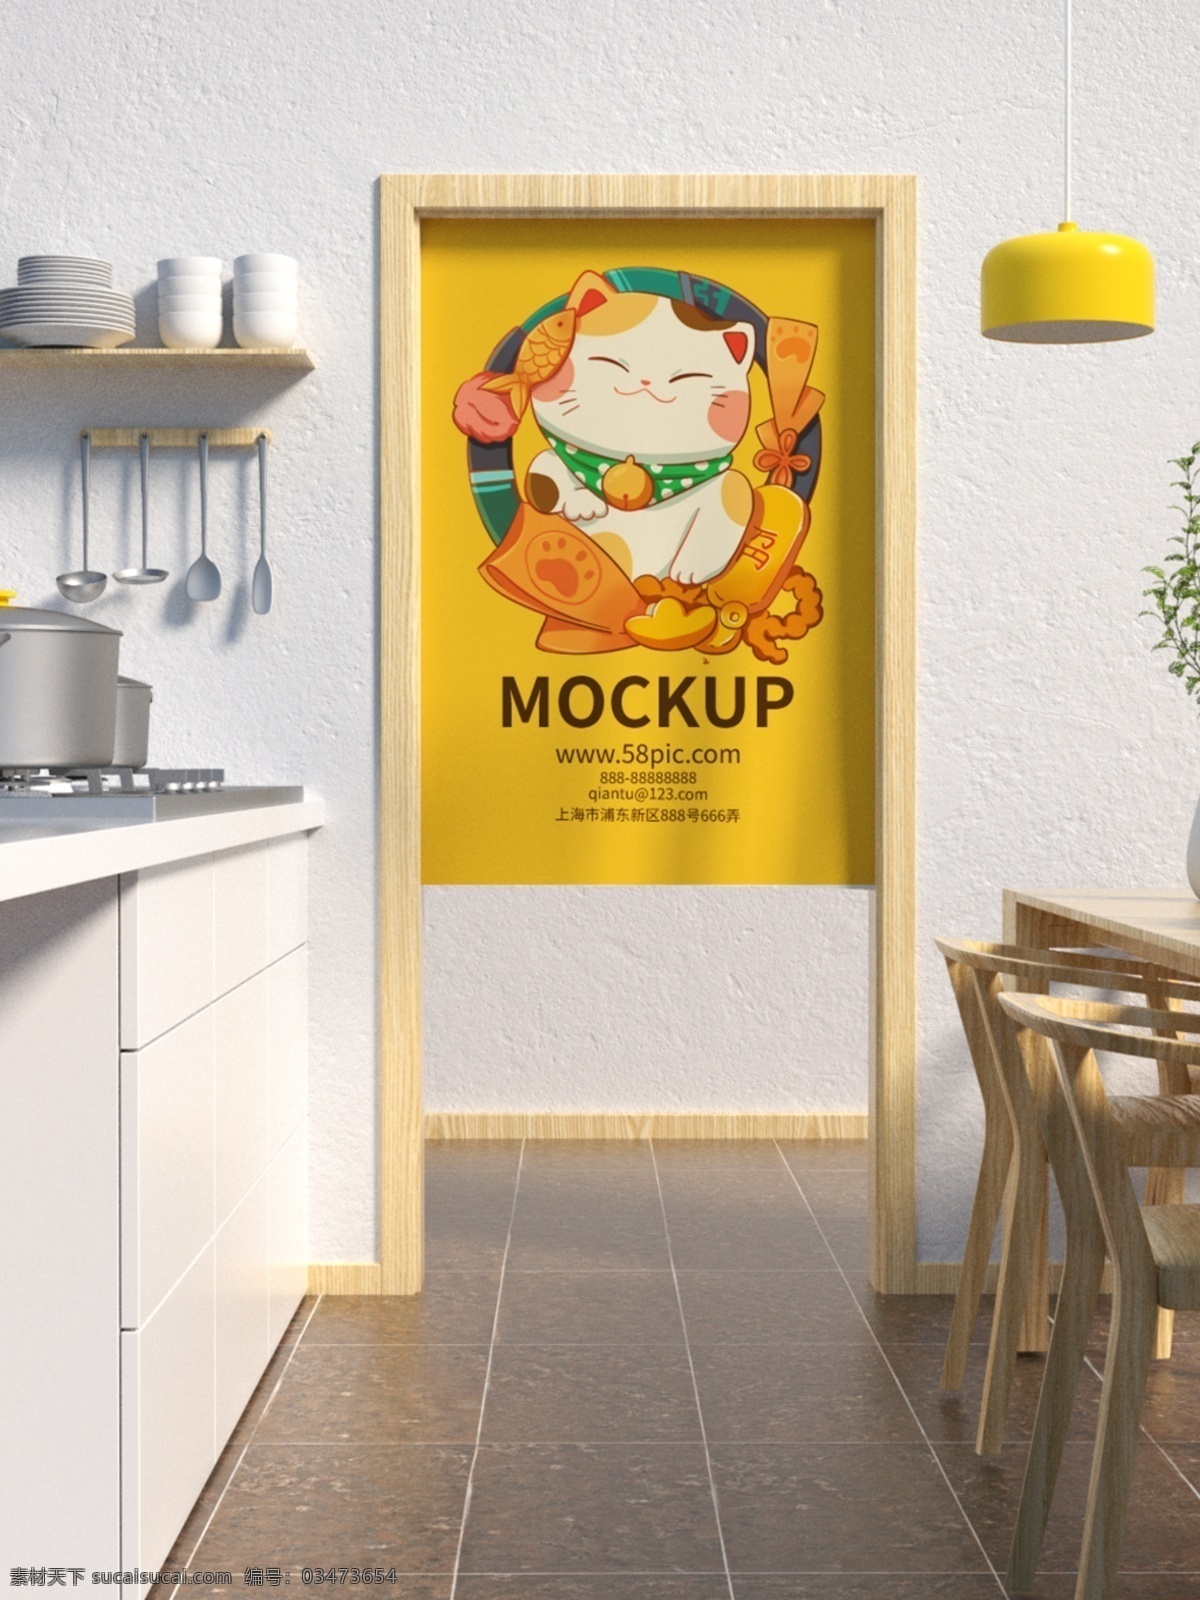 招 财 猫 样机 场景 海报样机 广告牌 智能图层 效果图样机 贴图样机 展示 招财猫 卡通